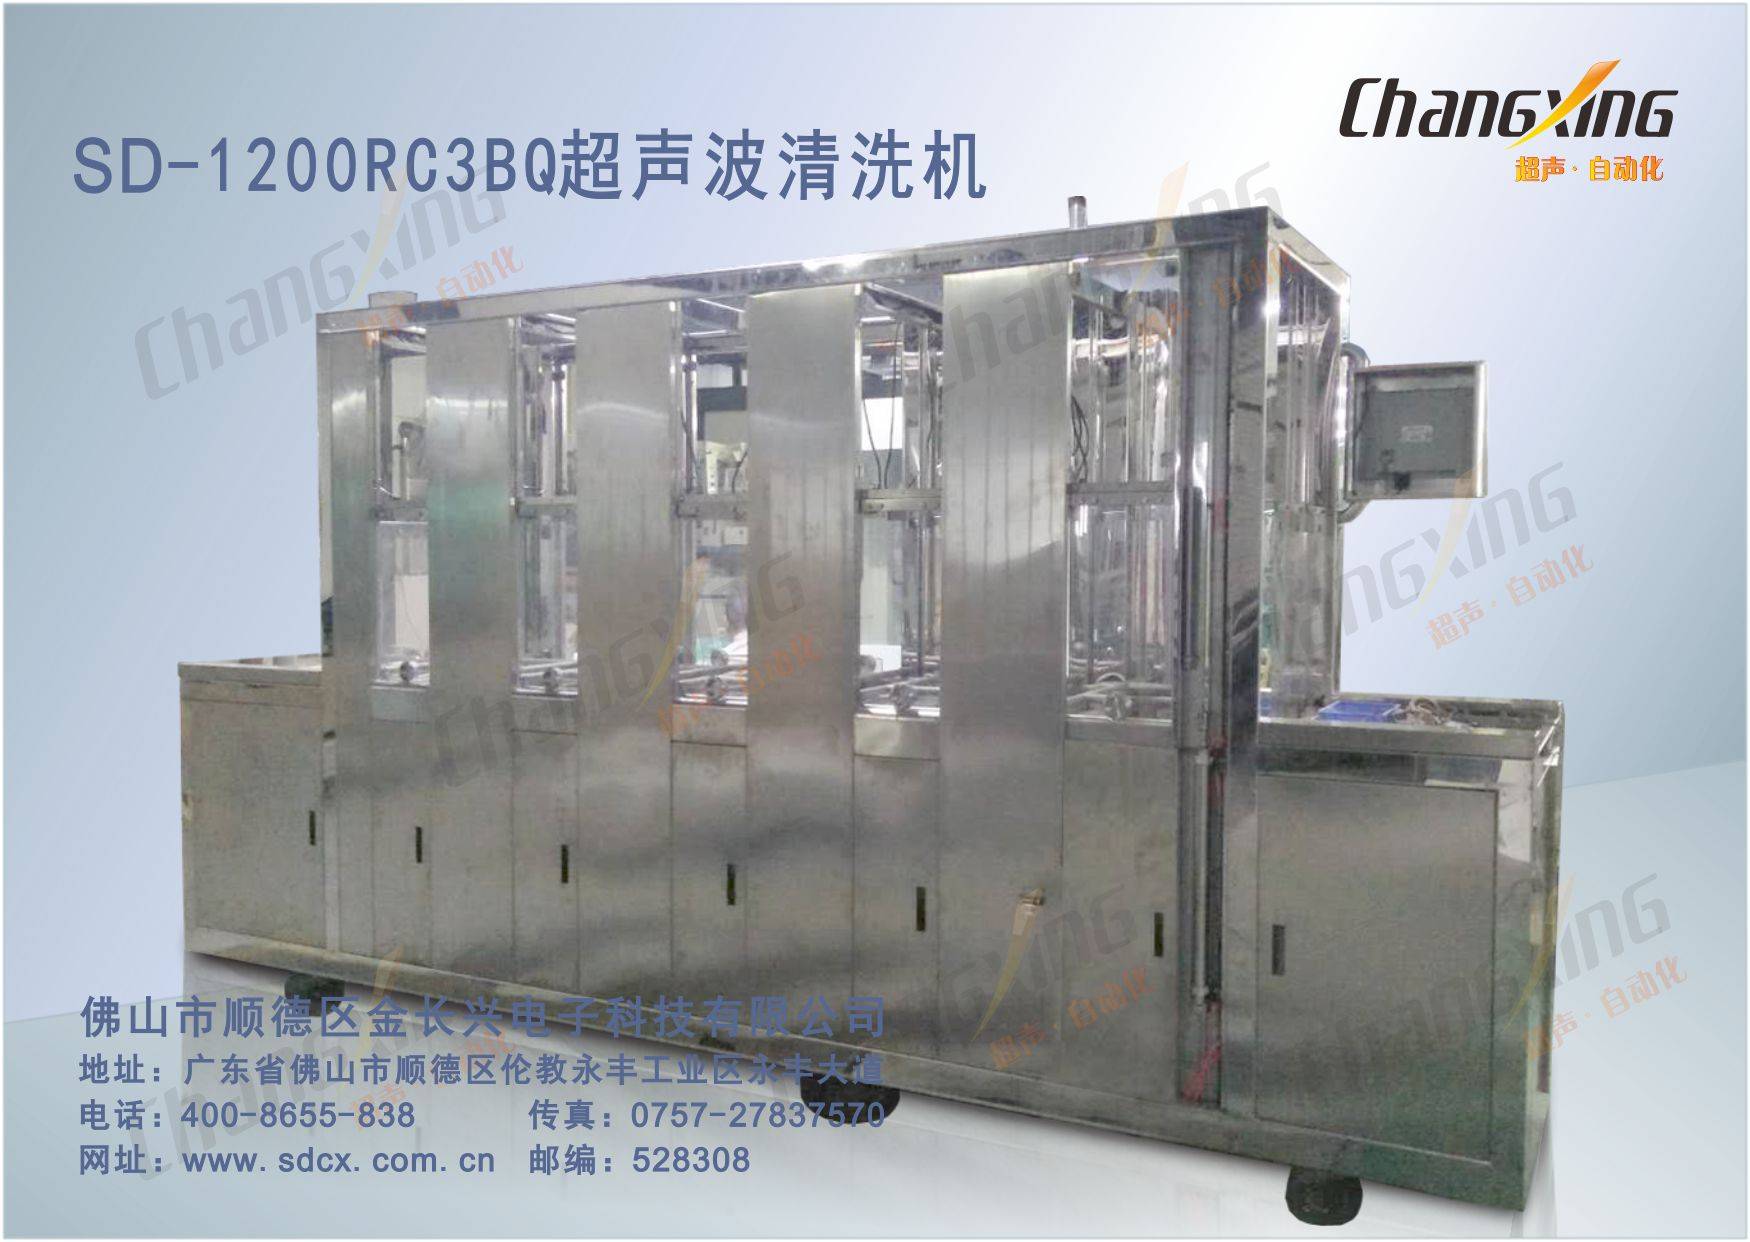 SD-1200RC3BQ超声波清洗机(1)